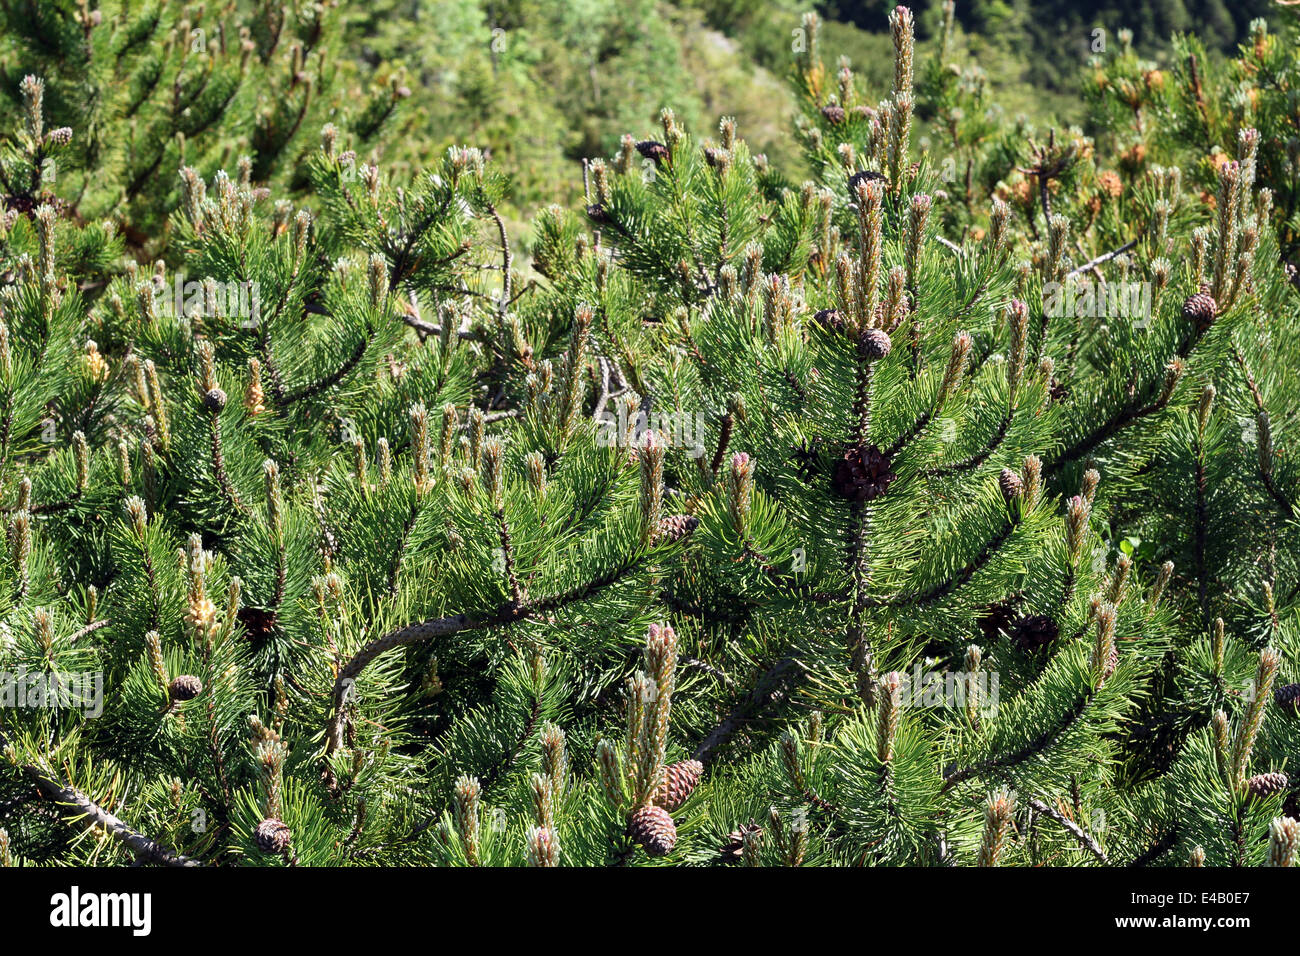 dwarf pine Stock Photo